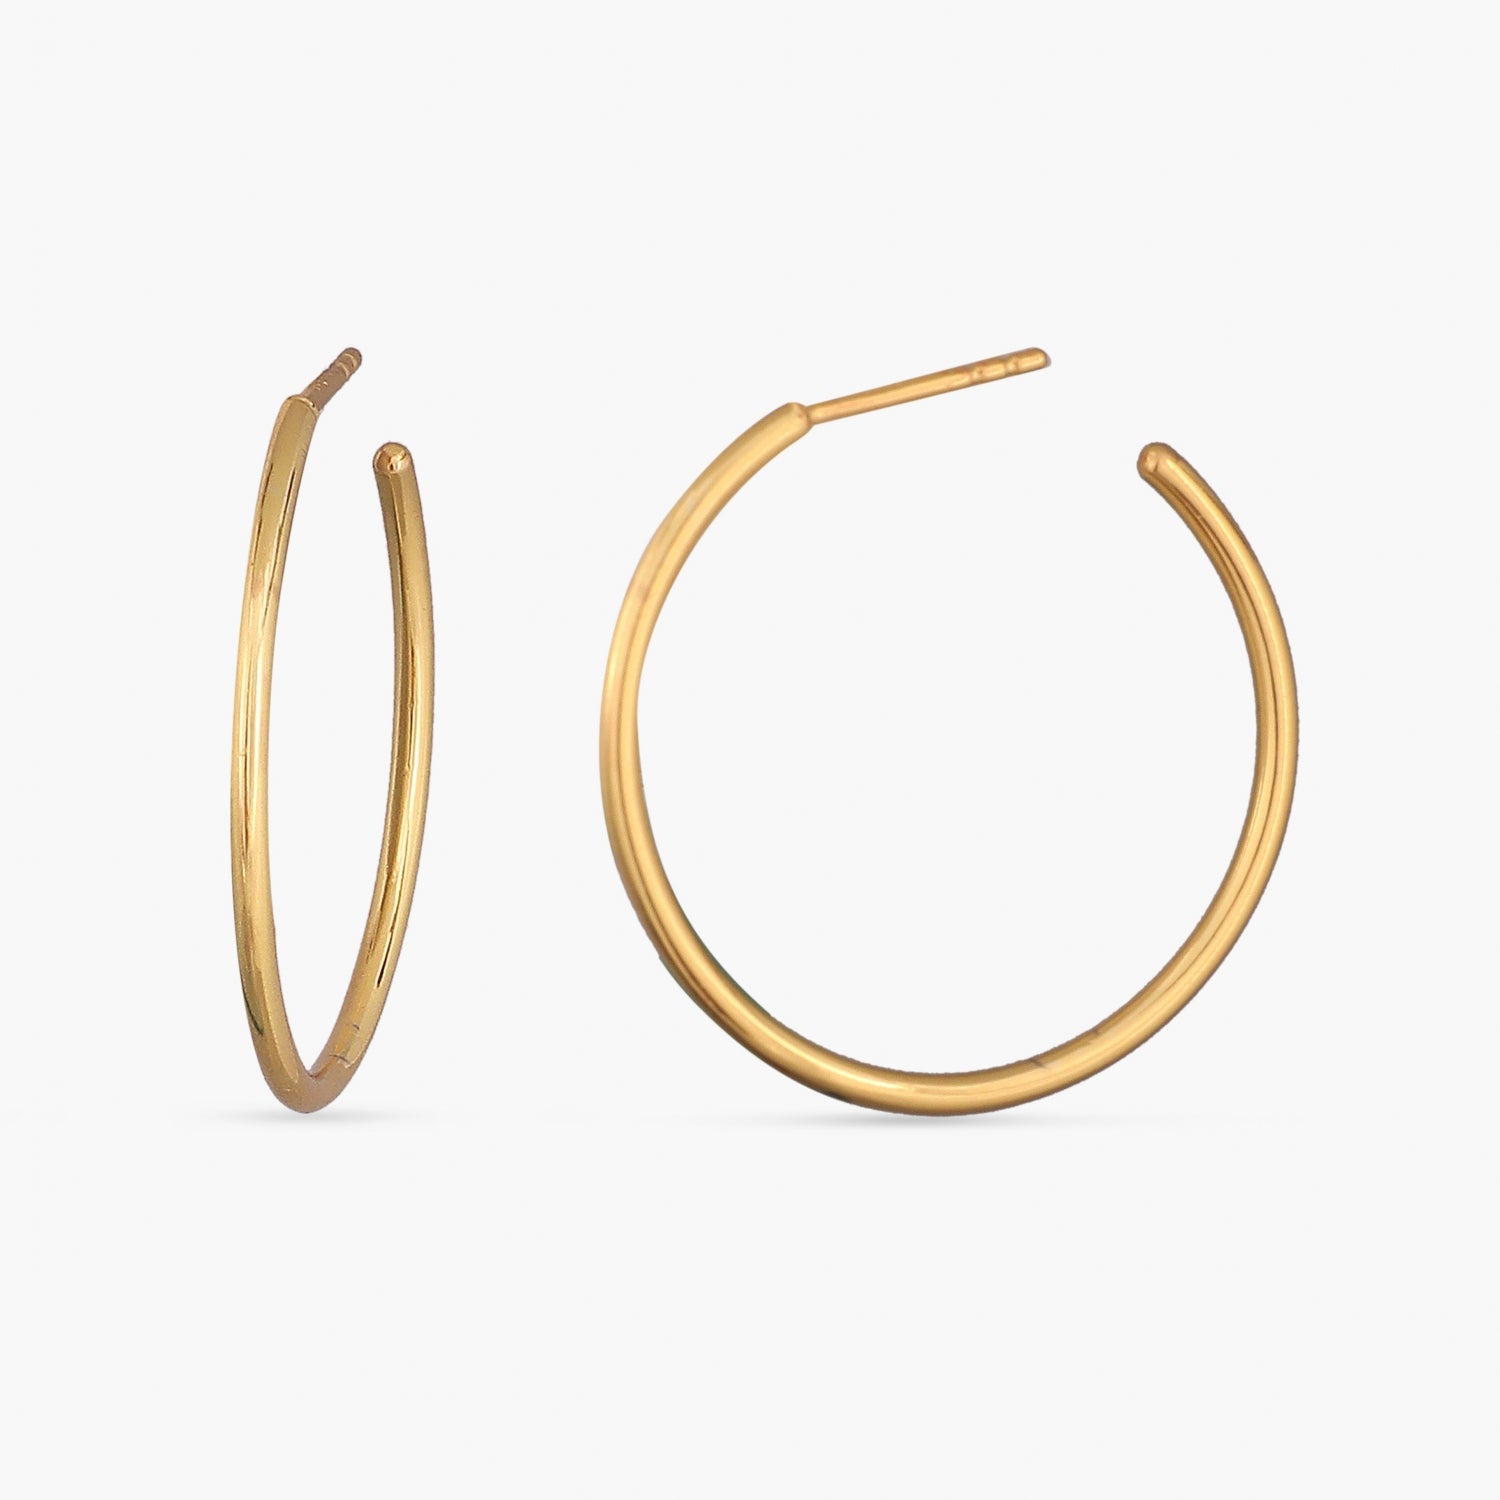 Buy Silver Earrings for Women by Eloish Online  Ajiocom